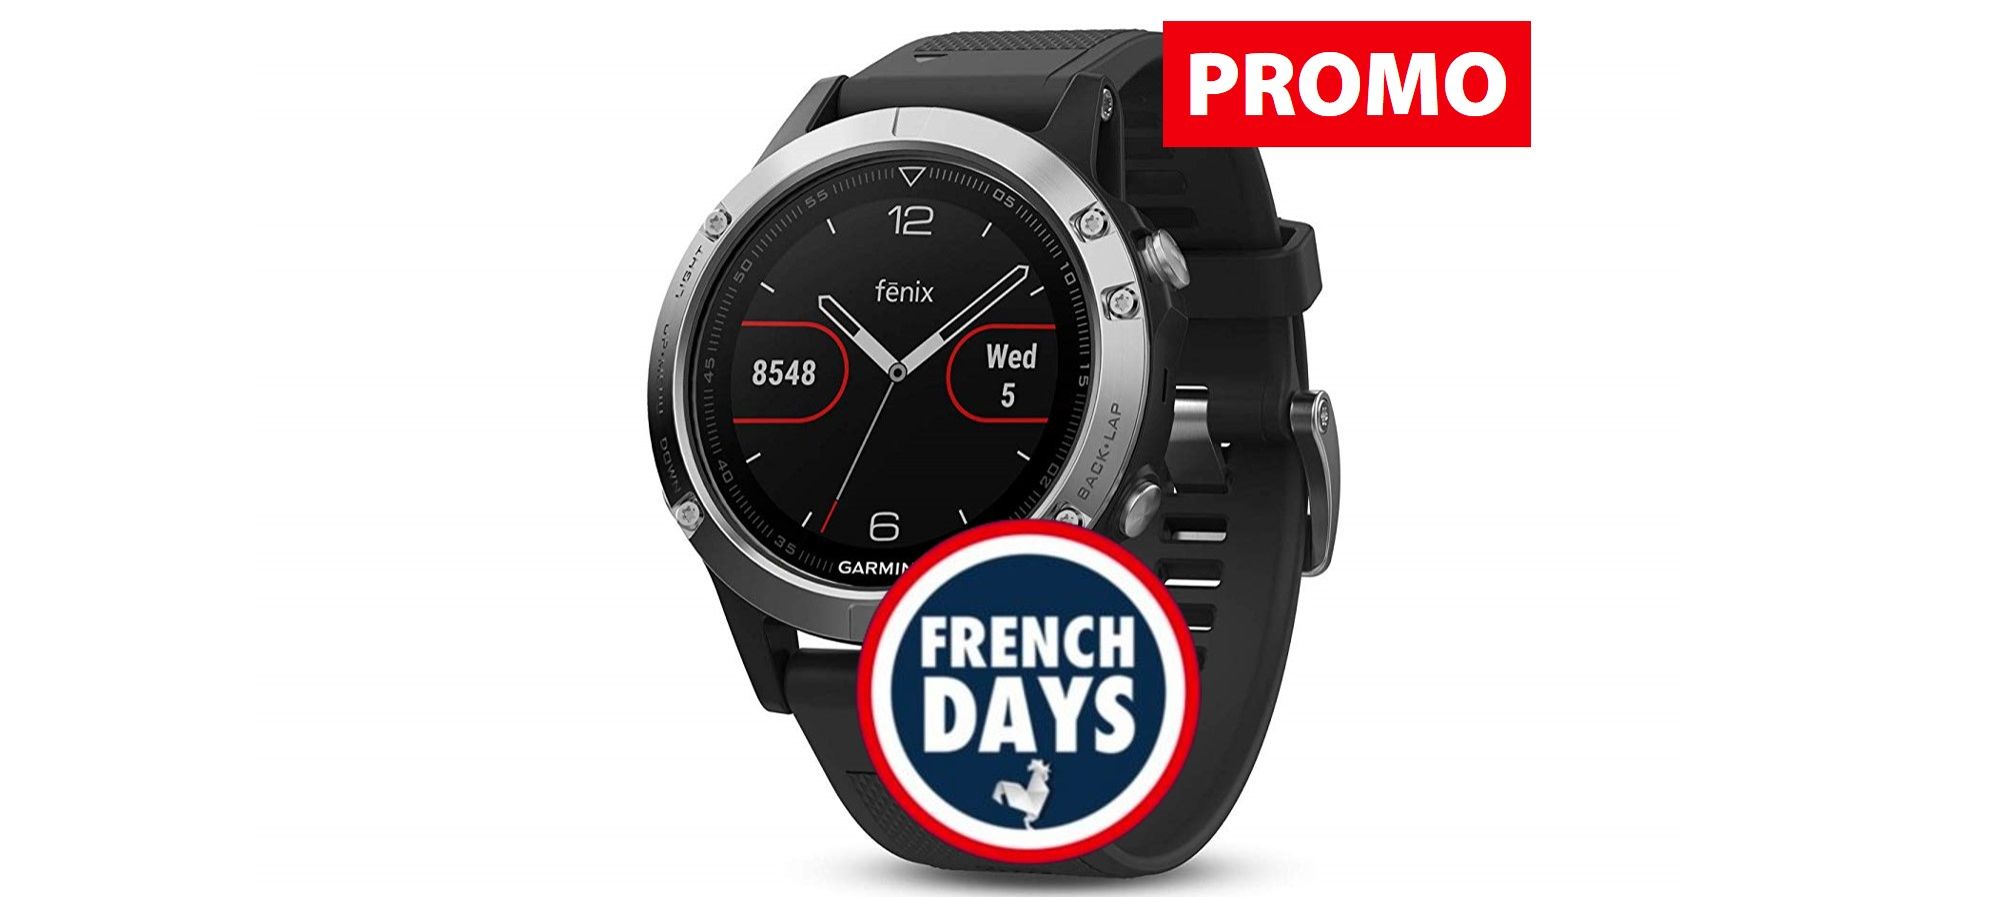 FRENCH DAYS 2019] Des offres flash sur les montres et GPS Garmin